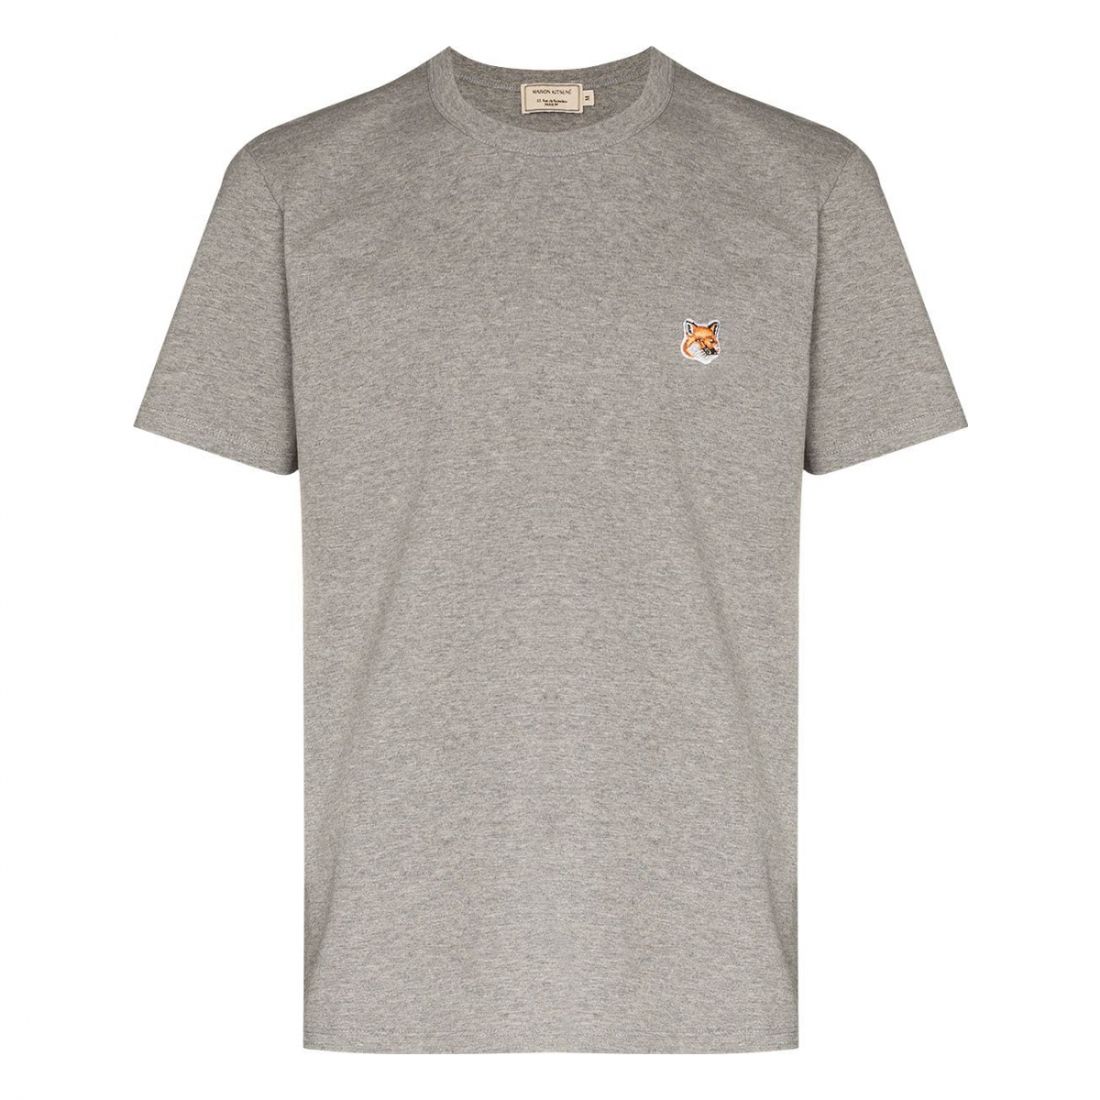 Maison Kitsuné - T-shirt 'Fox Head' pour Hommes